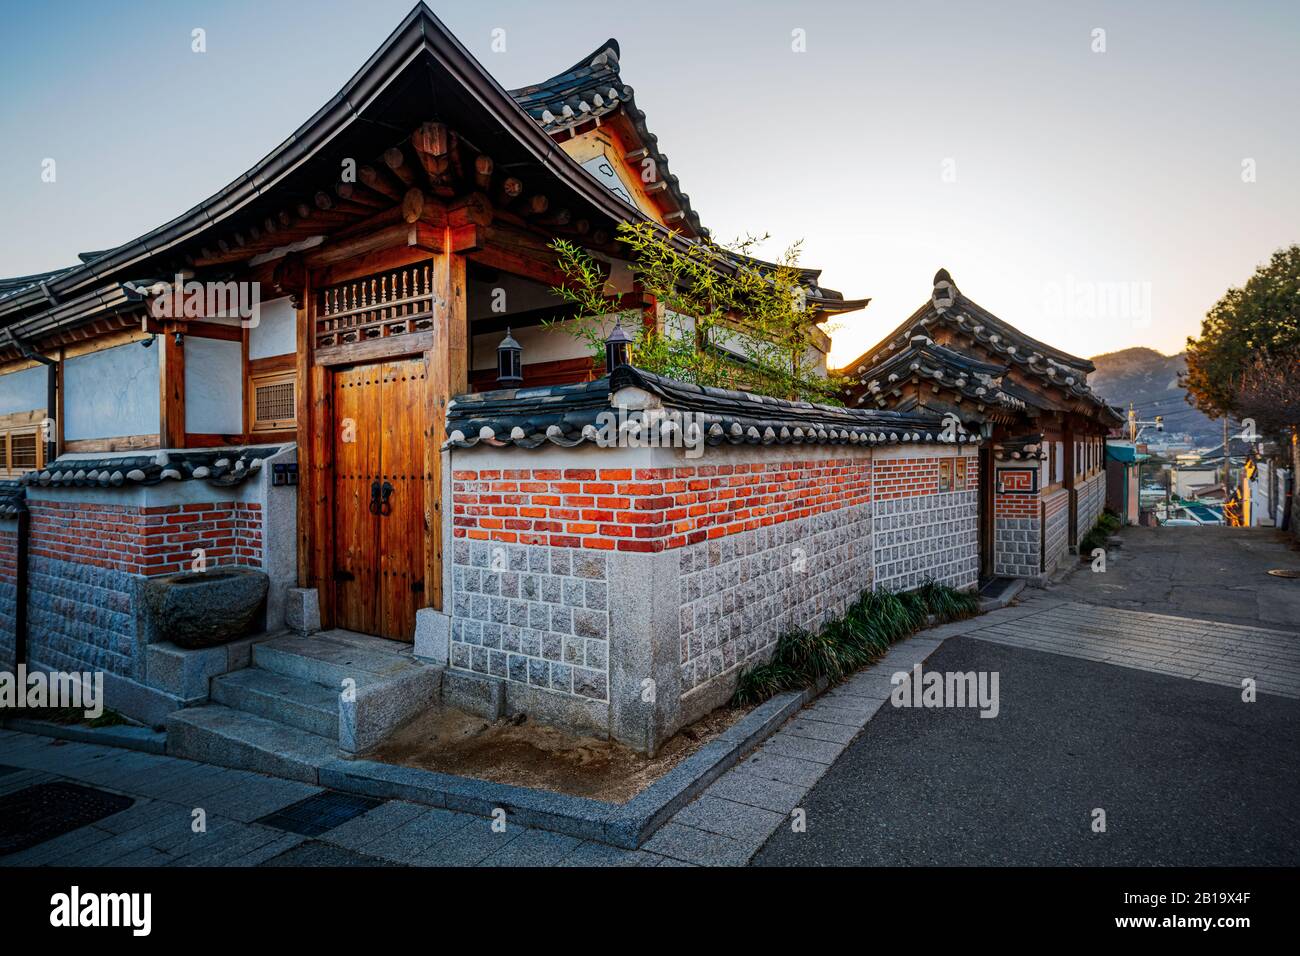 Seoul, Corea del Sud - 23 FEBBRAIO 2020: Normalmente pieno di turisti, Bukchon Hanok Village è tranquillo come meno persone avventurarsi a causa di coronavirus. Foto Stock